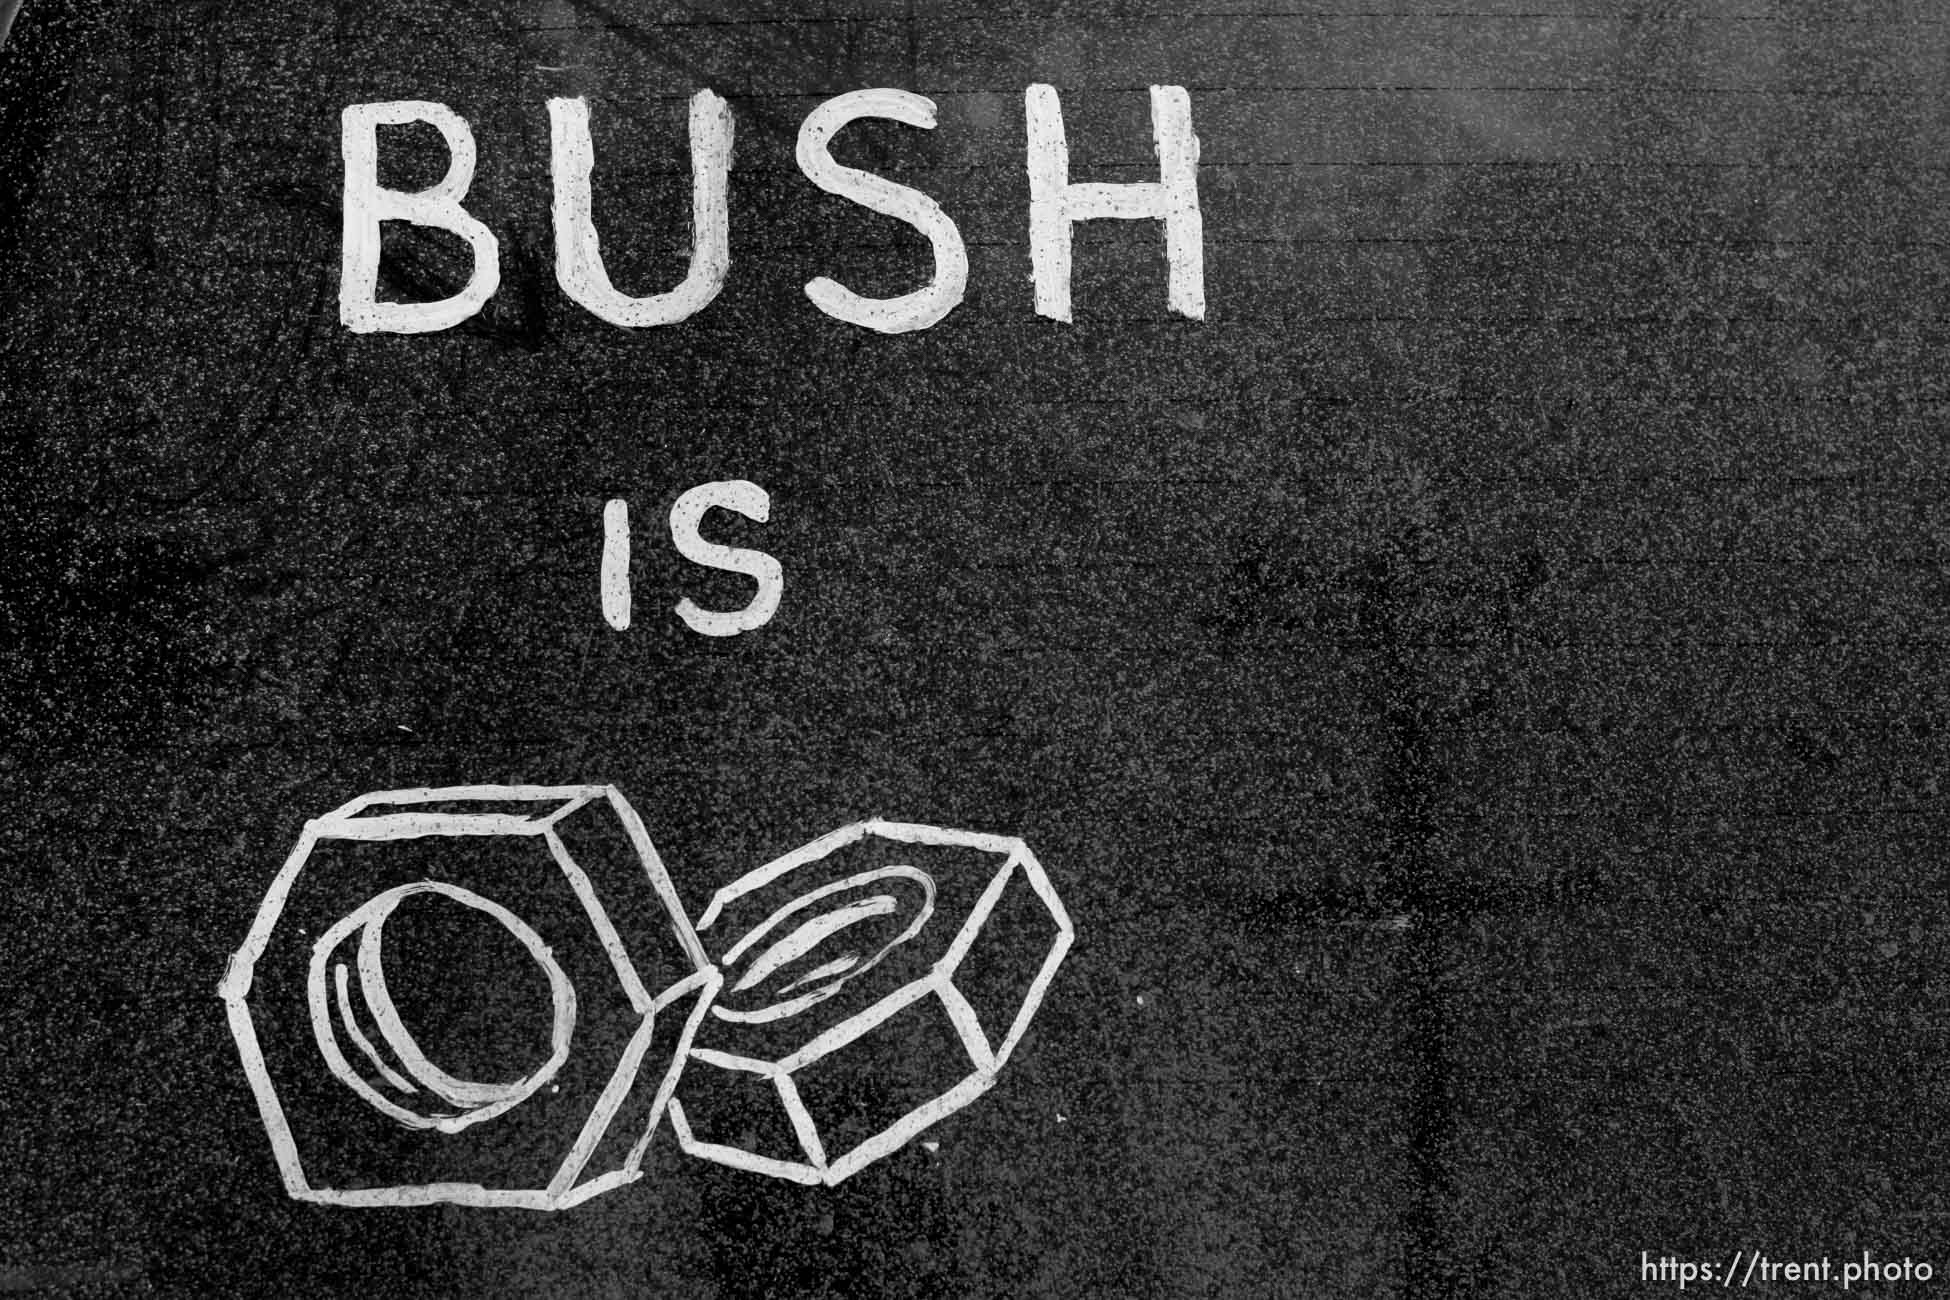 Bush is